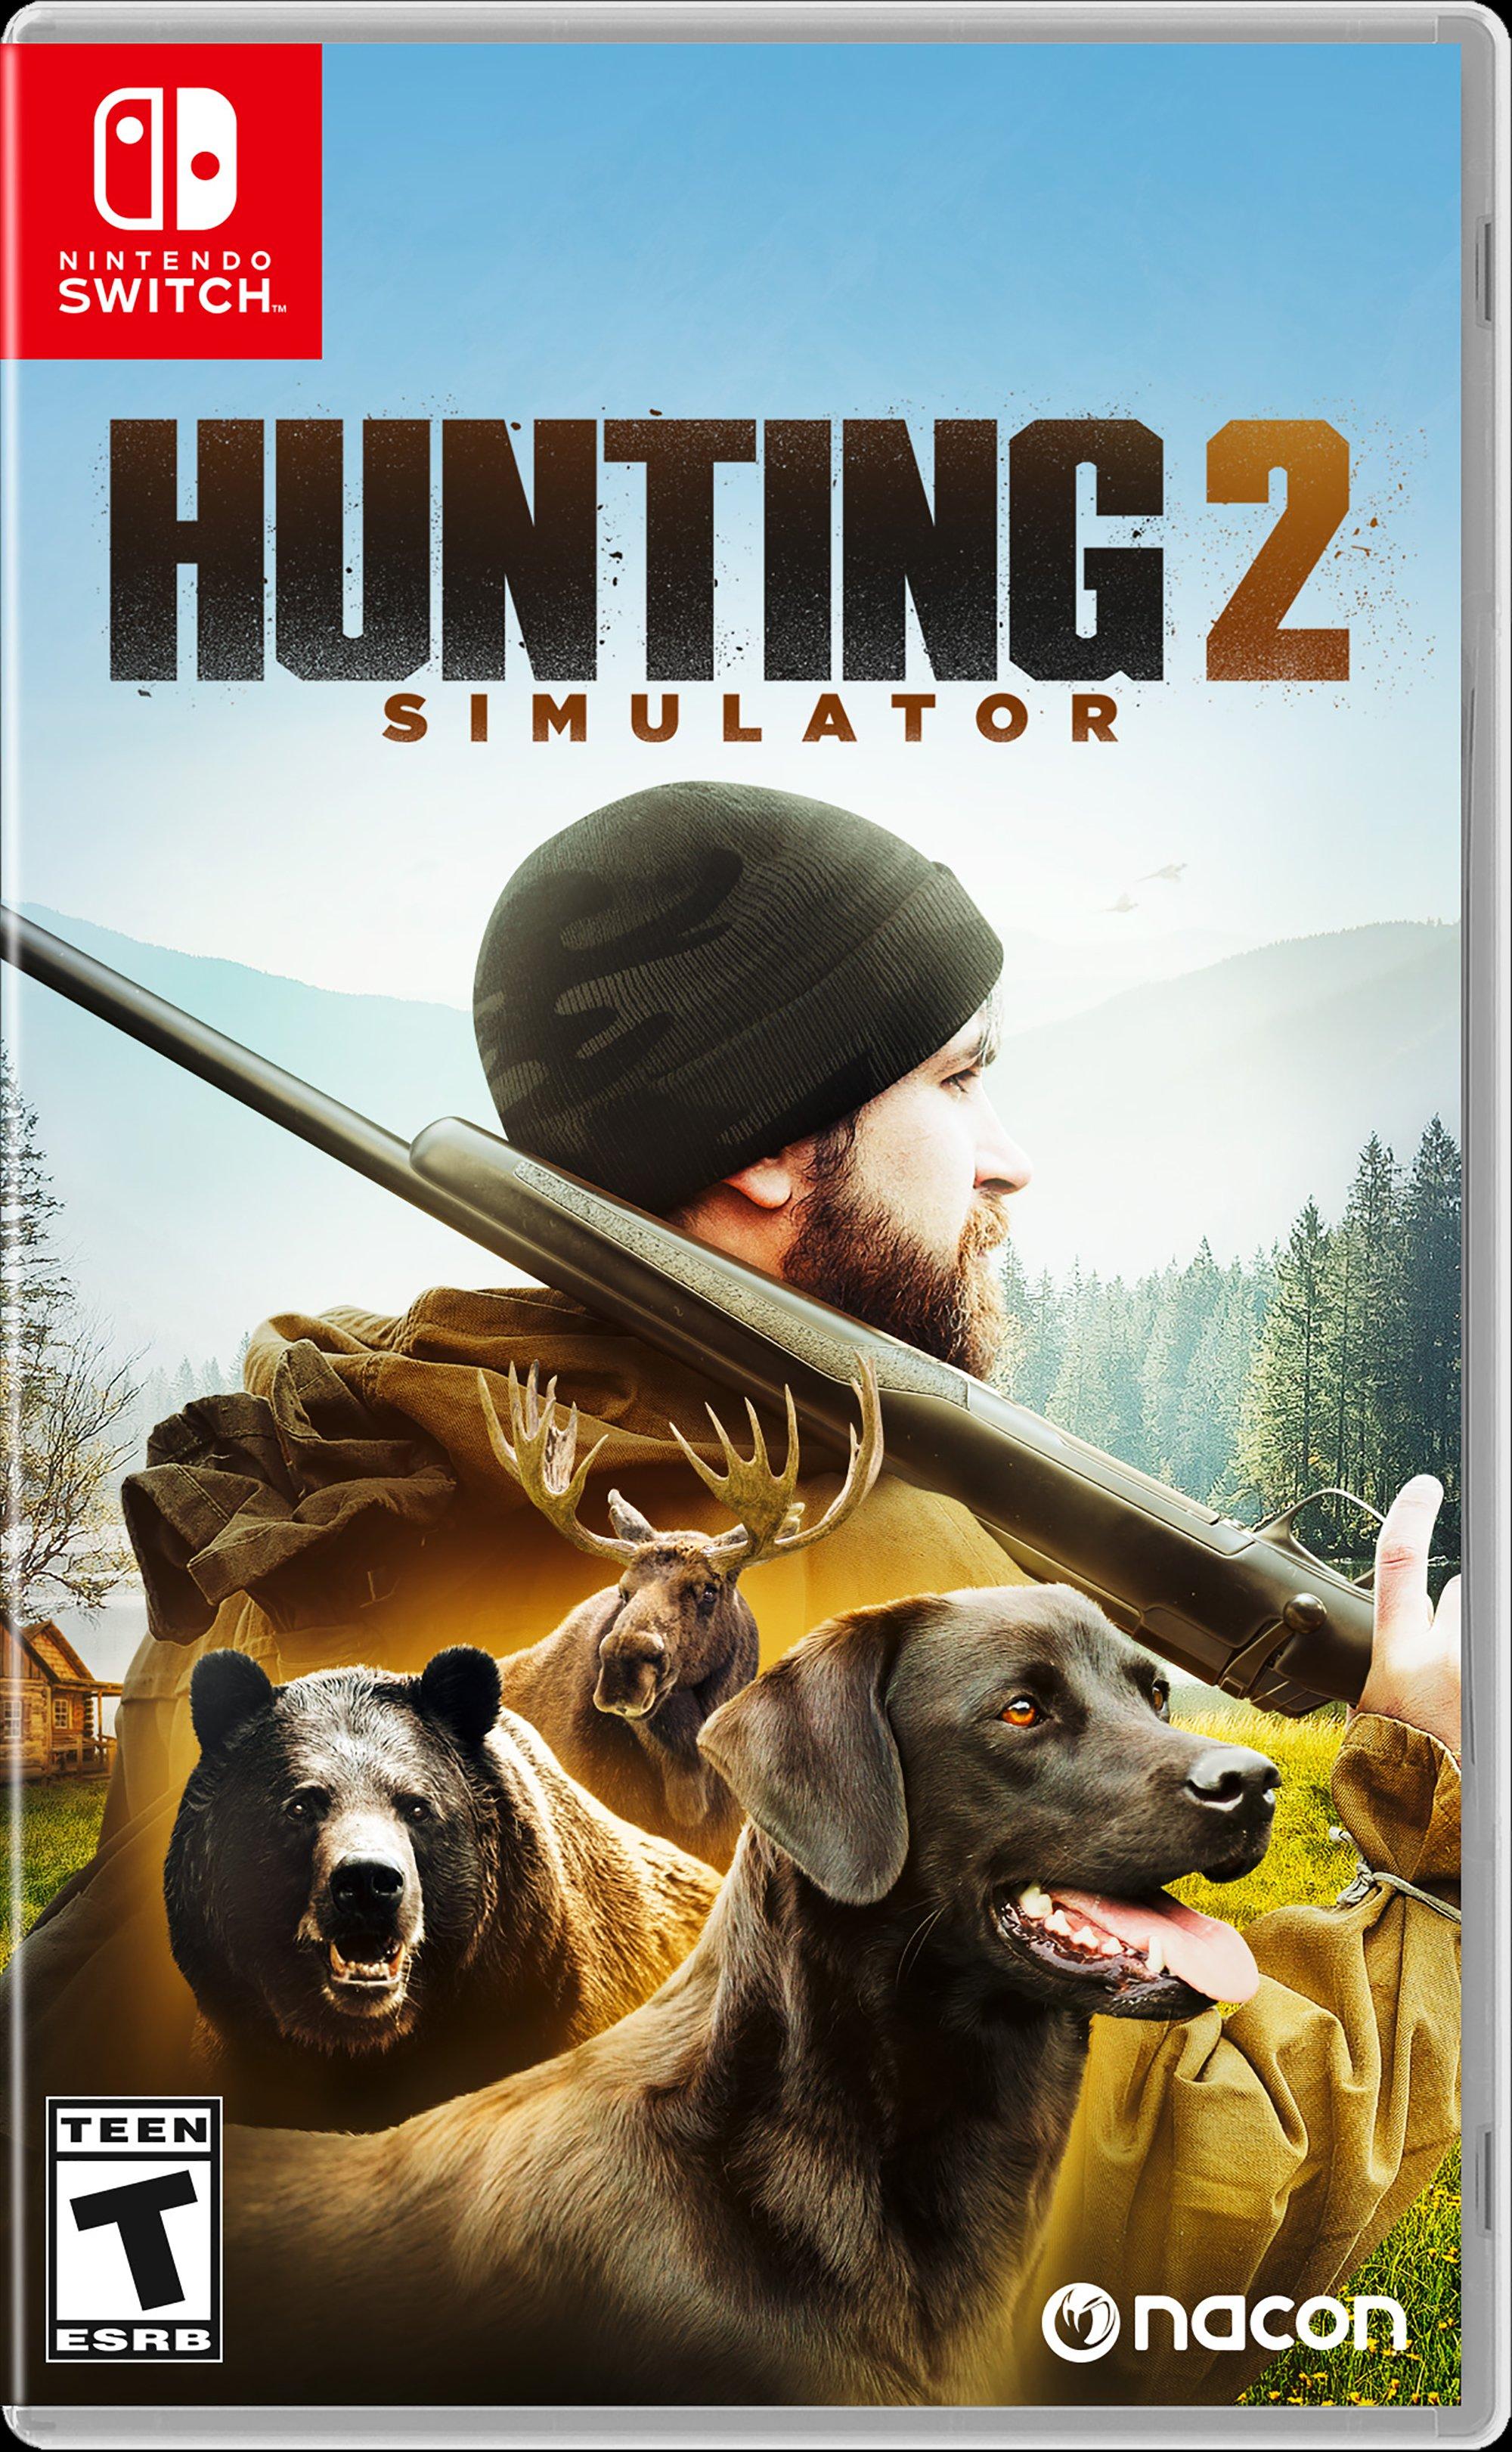 Hunting Simulator 2 Codes